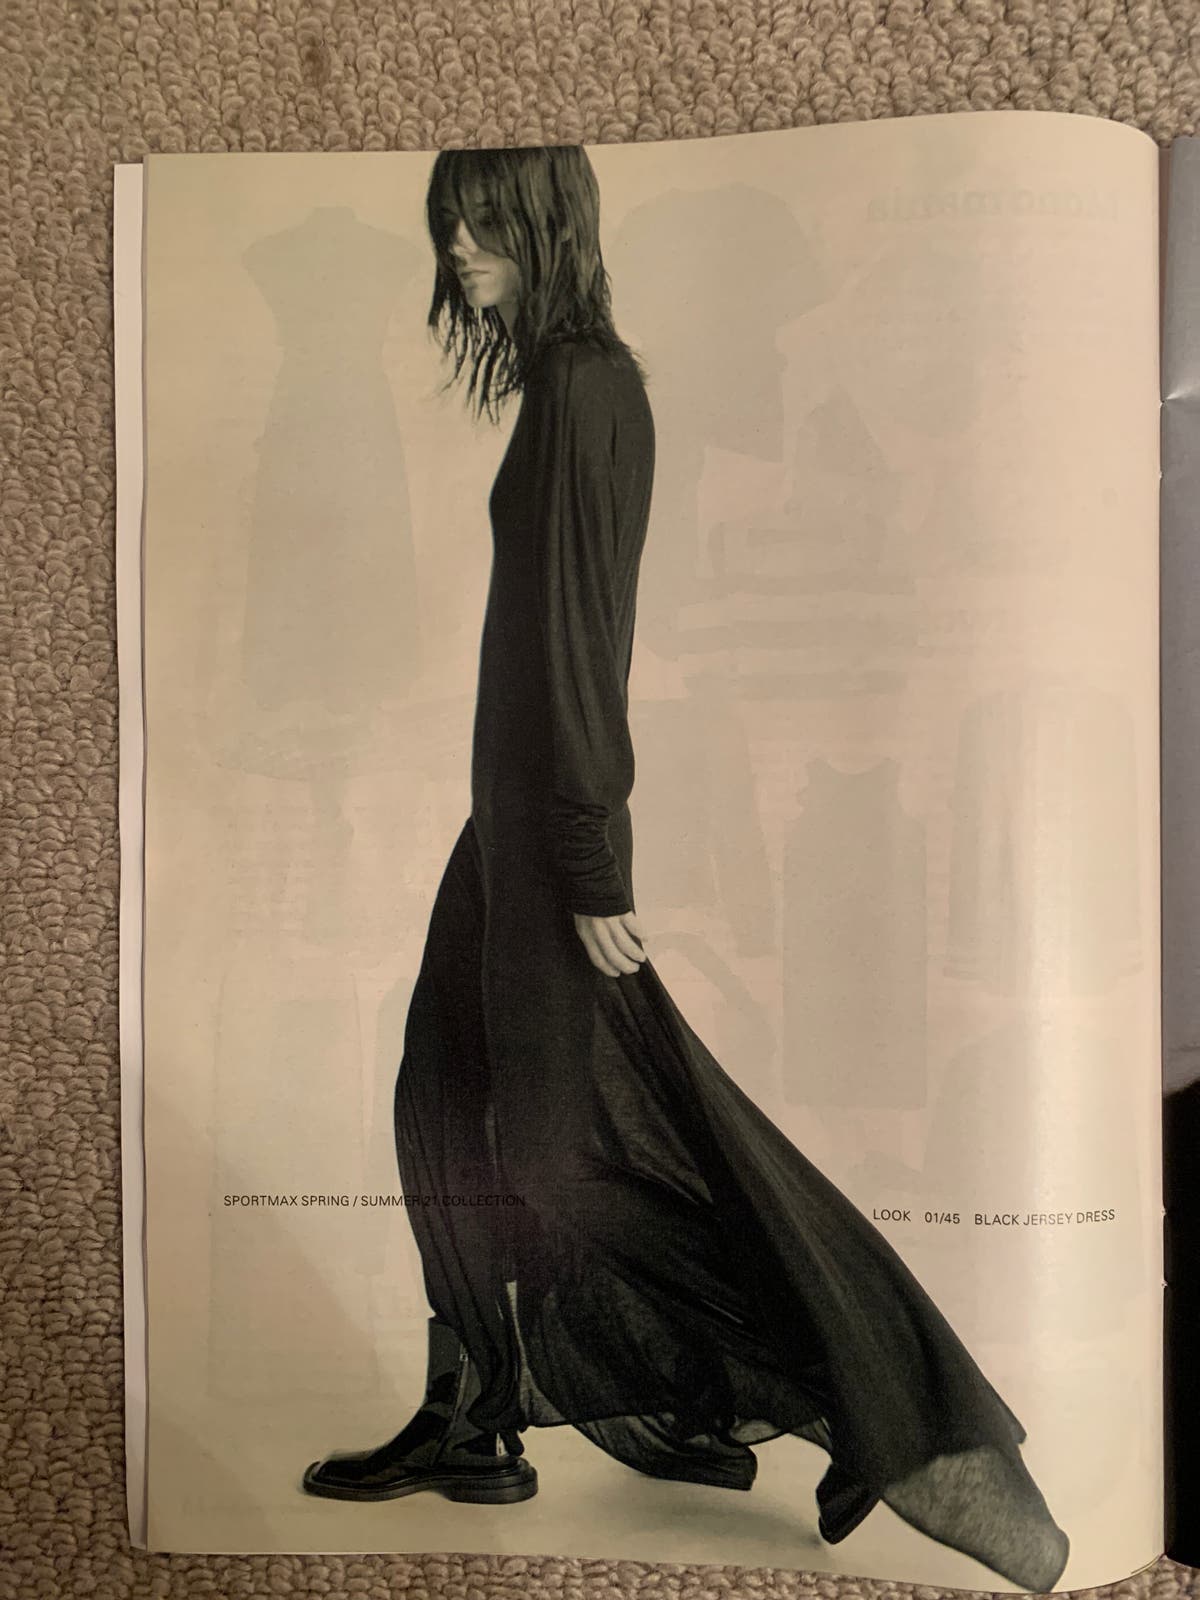 Max Mara sử dụng hình ảnh người mẫu siêu gầy trên tạp chí thời trang. Ngay lập tức, hãng đã nhận lệnh cấm từ cơ quan quảng lý quảng cáo